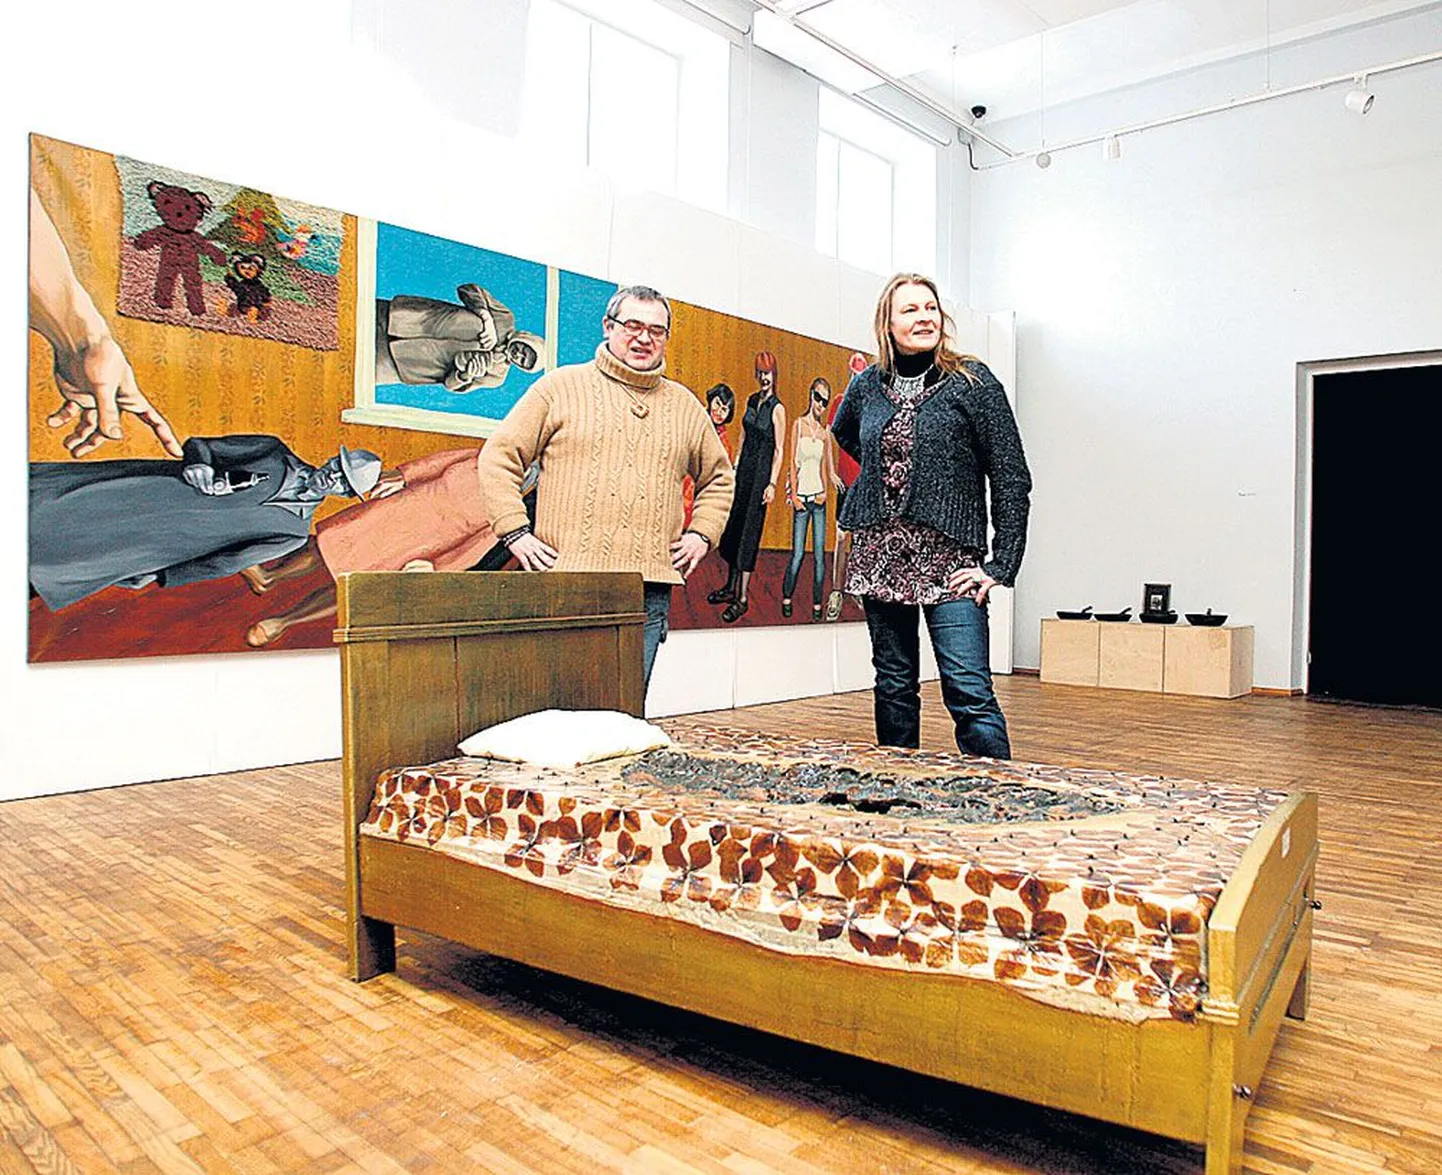 Suures galeriis kaks pärnakat

Pärnu kunstnikud ja ateljeenaabrid Andrus Joonas ja Siram on oma ühist näitust pannud poolitama Joonase installatsiooni, mille põhiosa on voodi.